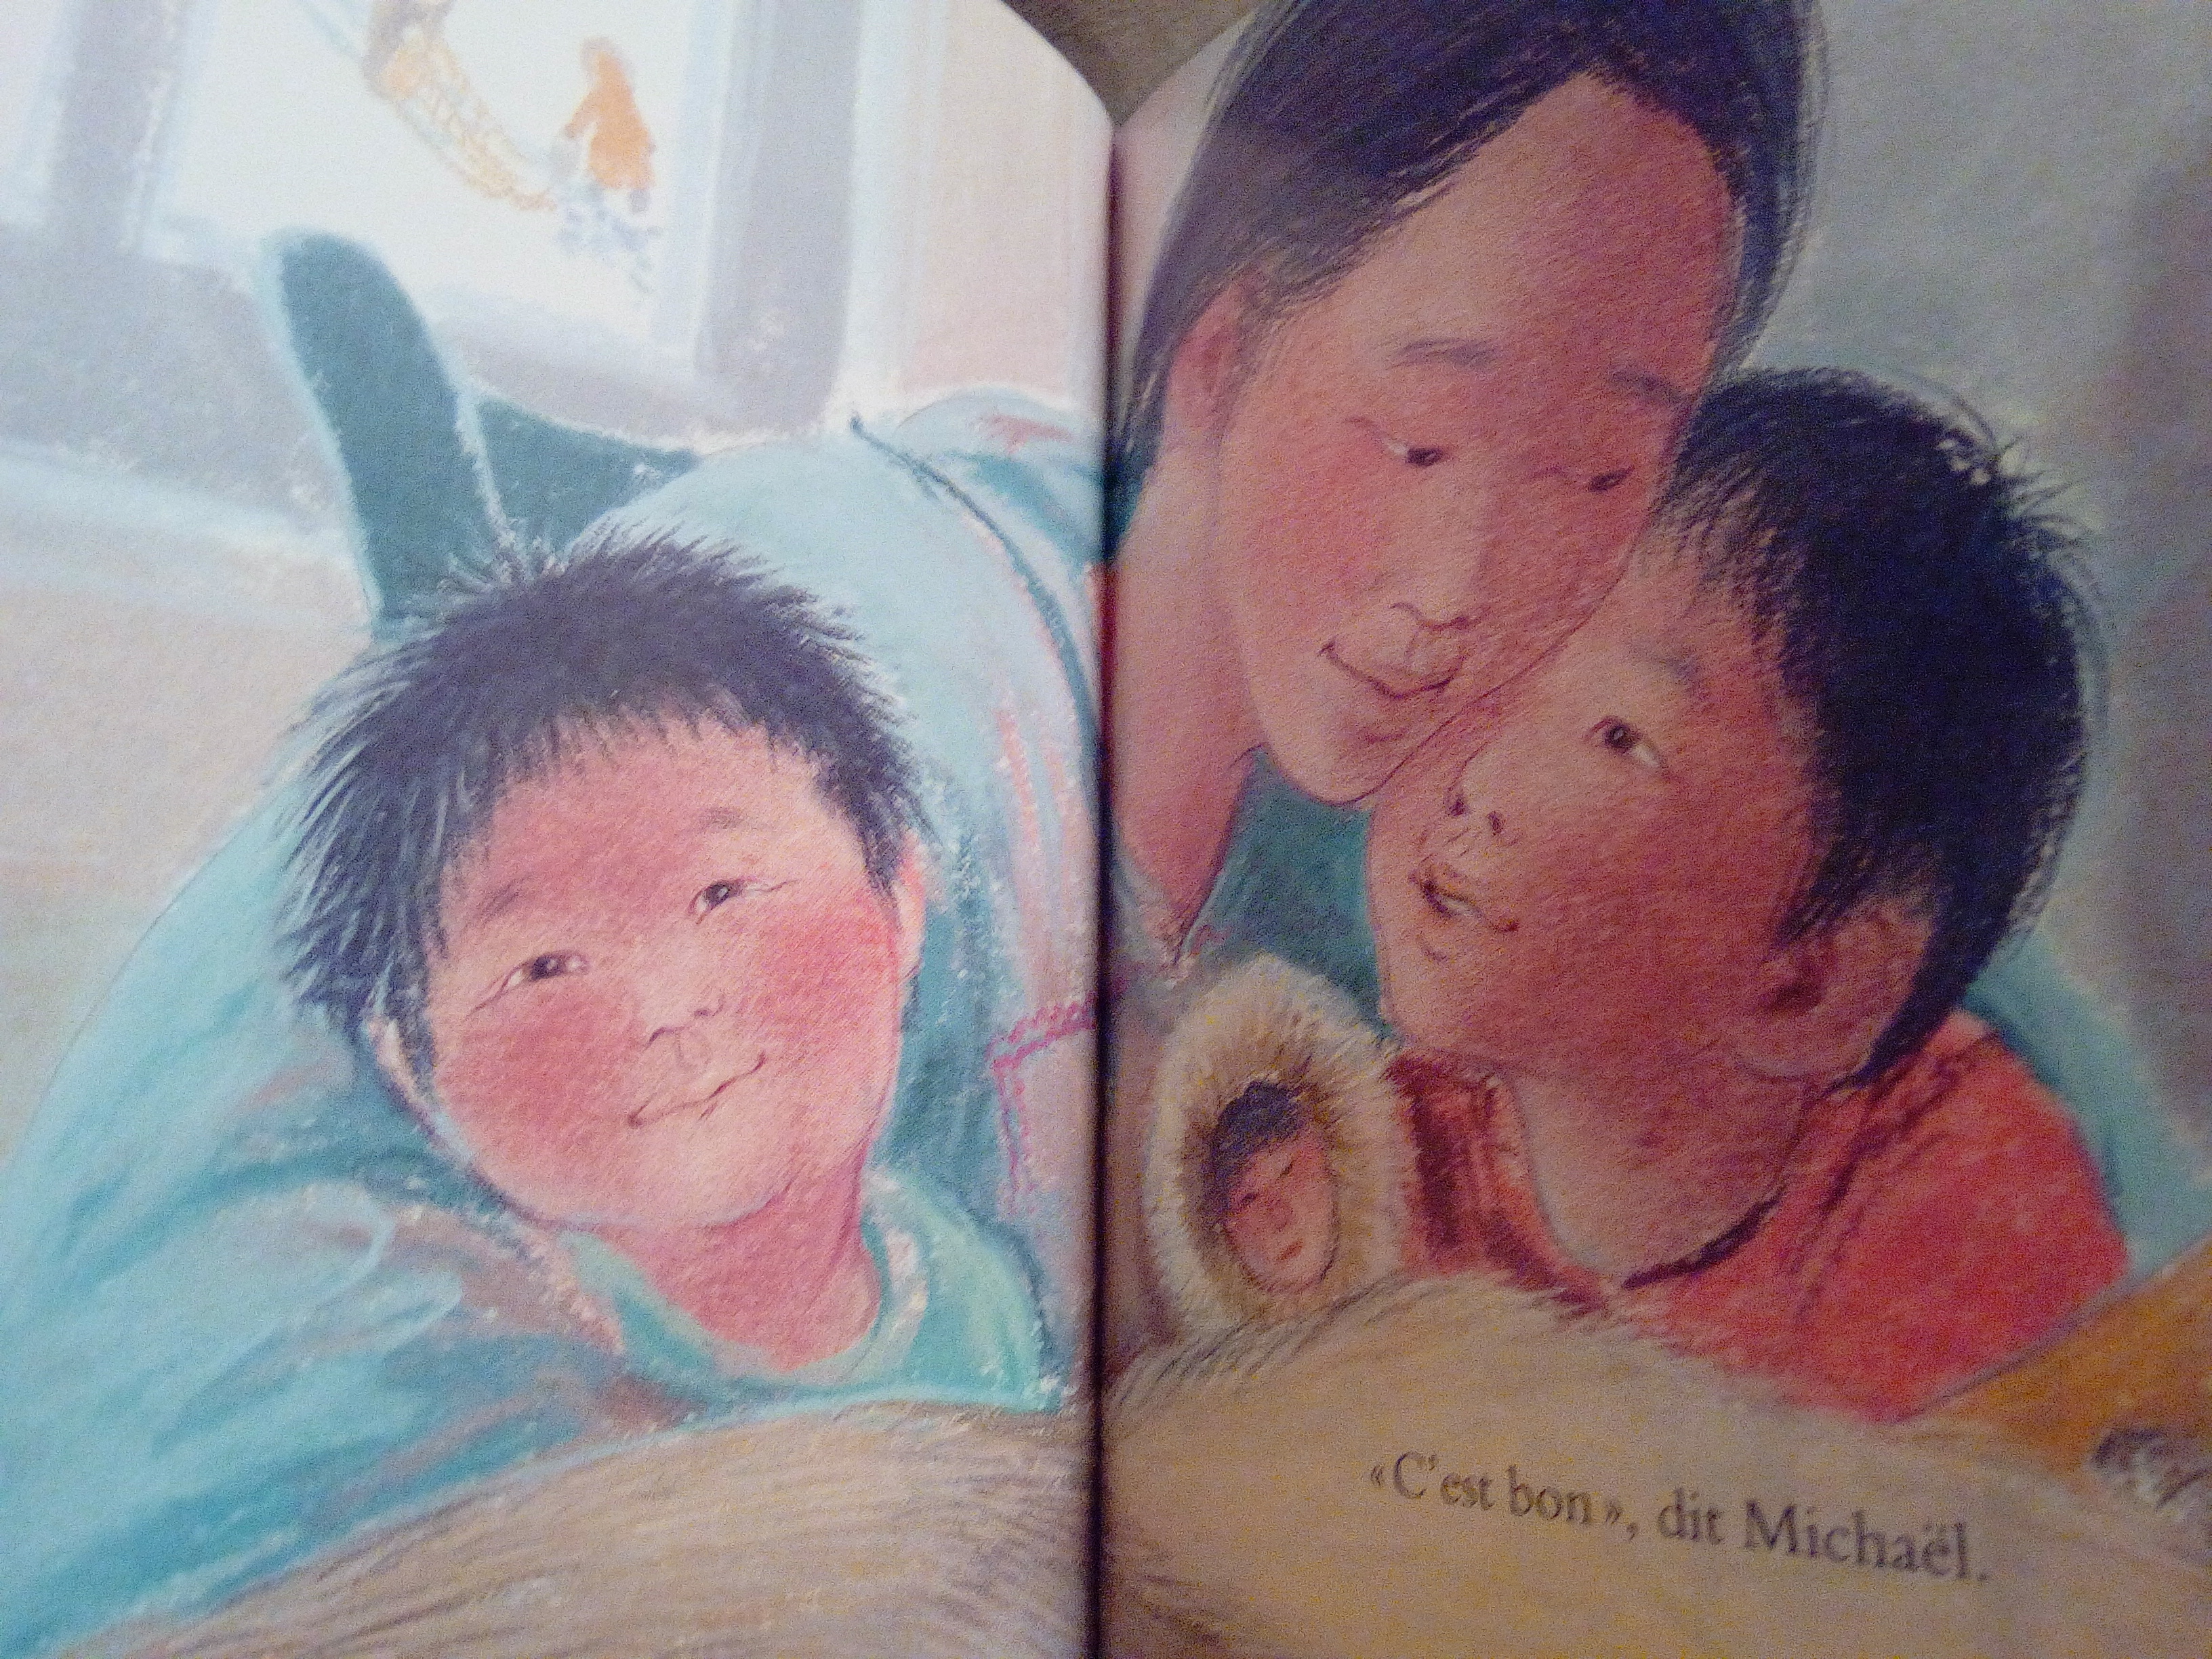 Sur les genoux de maman : un livre sur la place faite à chacun dans une  fratrie